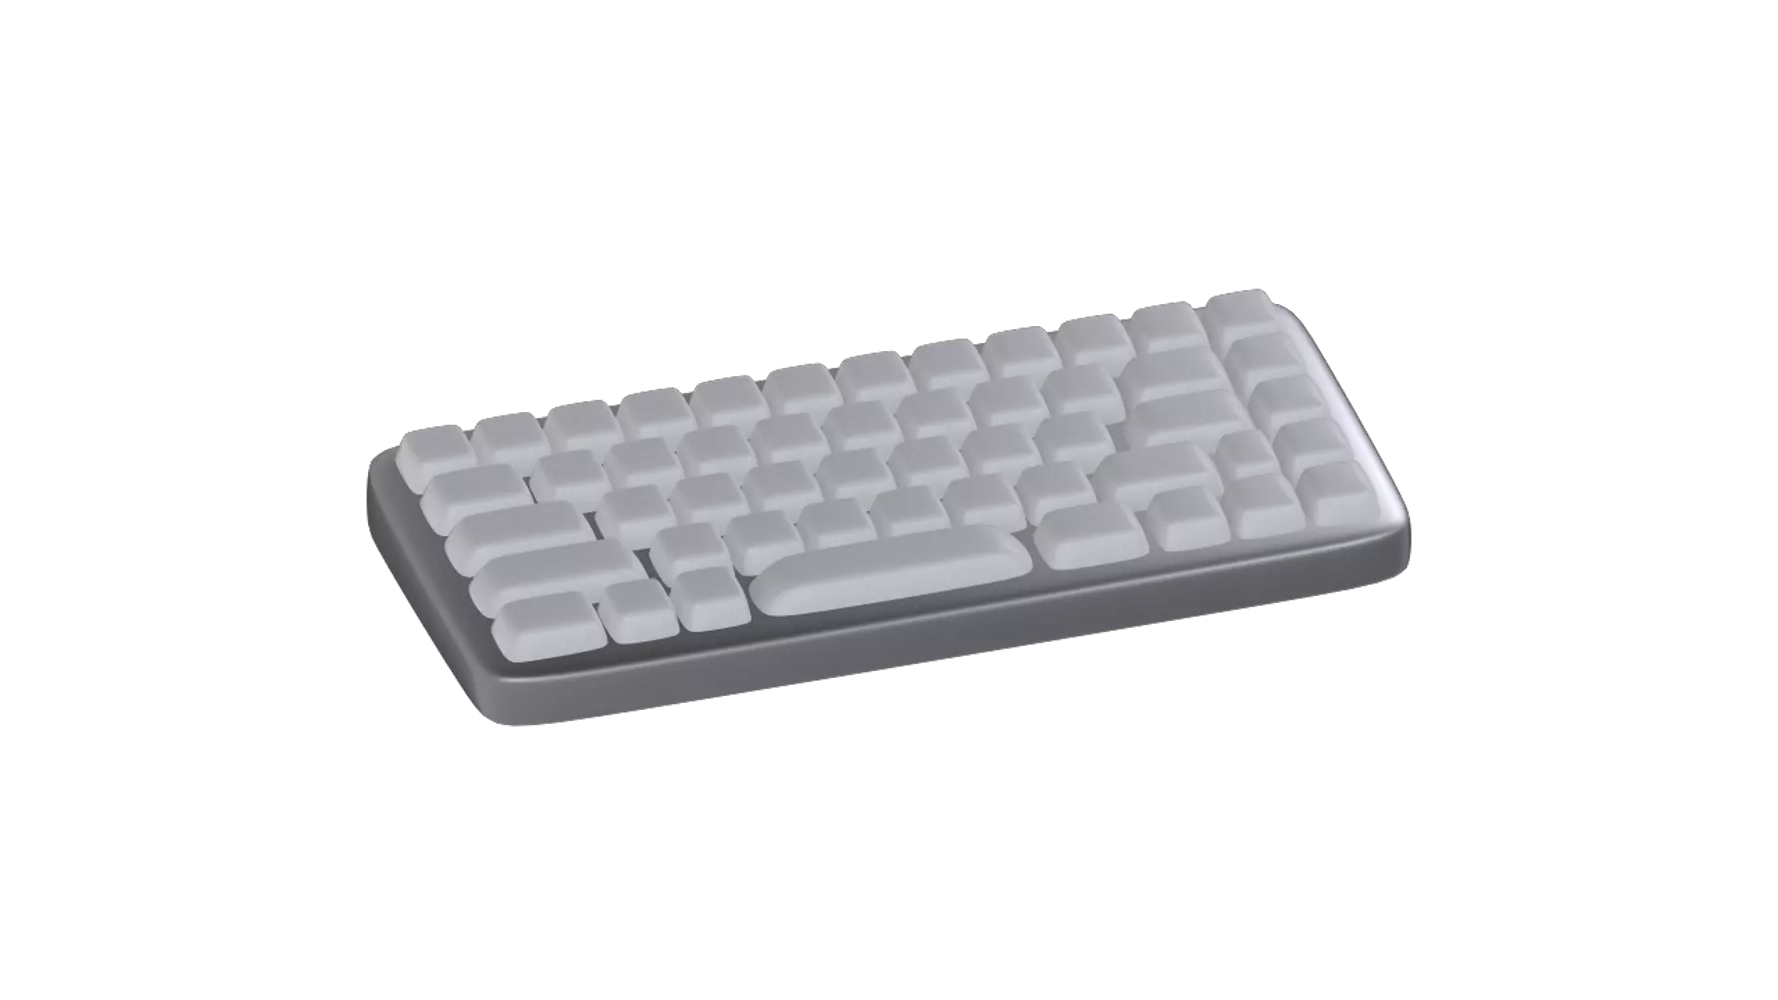 Keyboard 3d model--e04ac8ce-5575-484f-8a96-883c5c4ef4e5